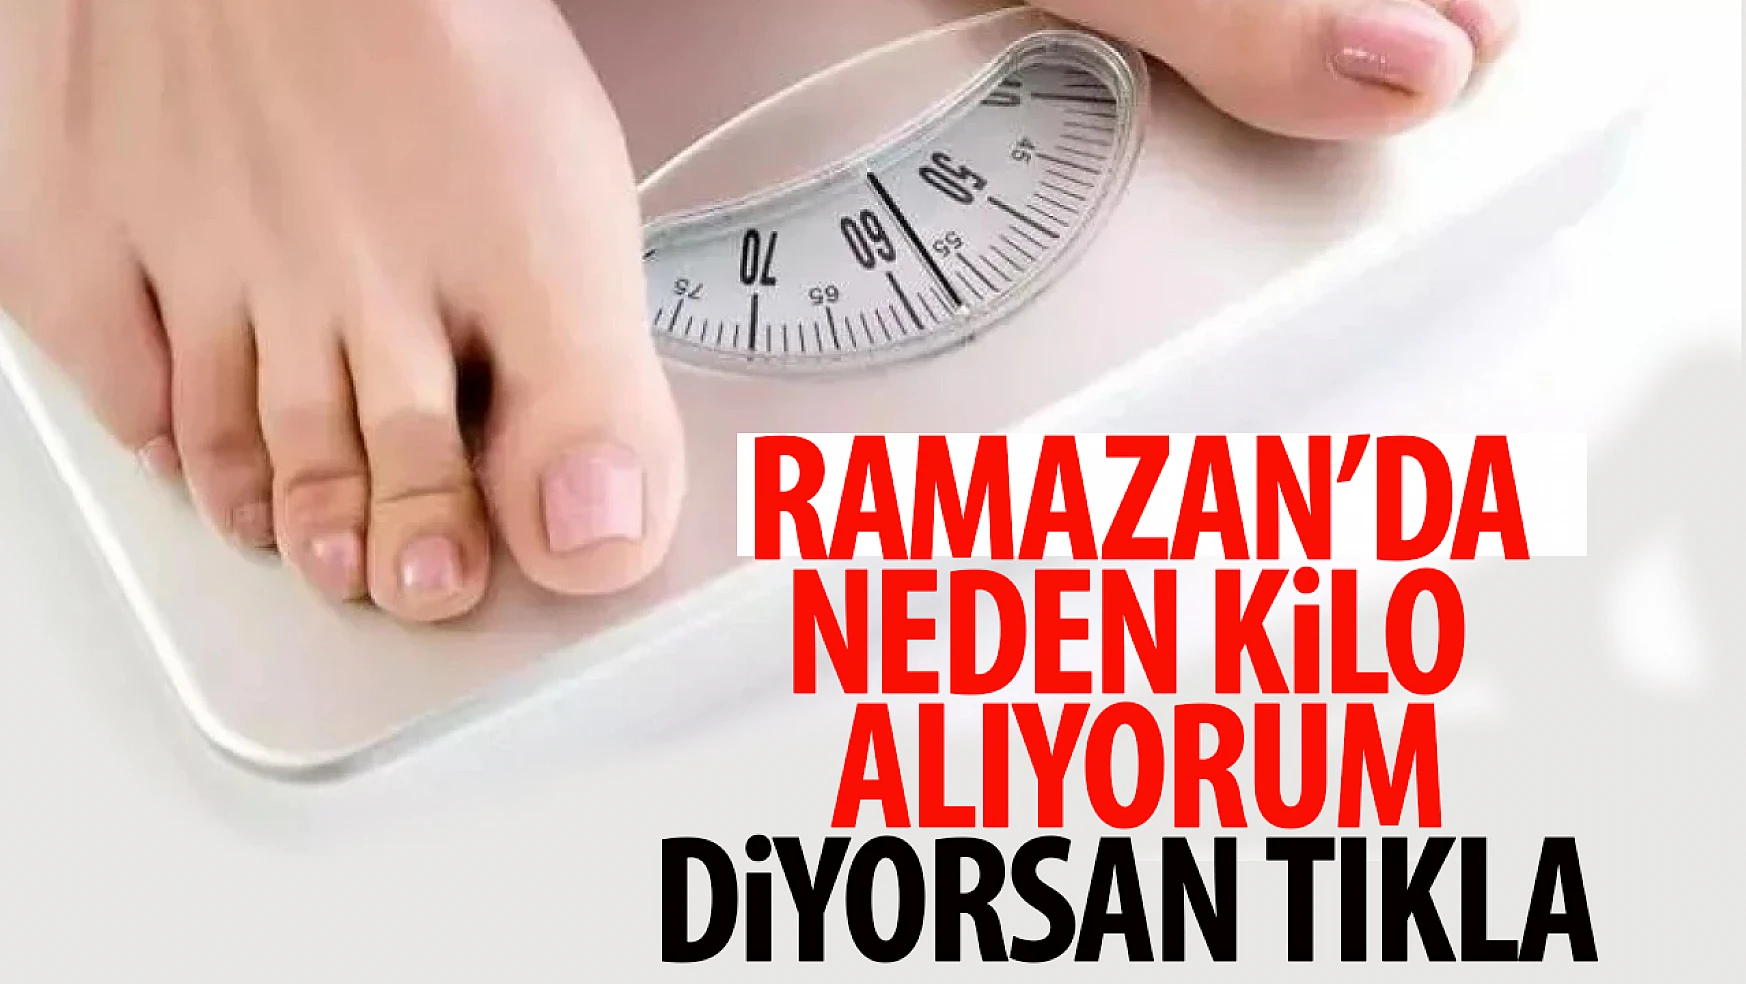 Doktorlardan uyarı! Ramazan'da kilo almamak için metabolizmayı hızlandıran öneriler!